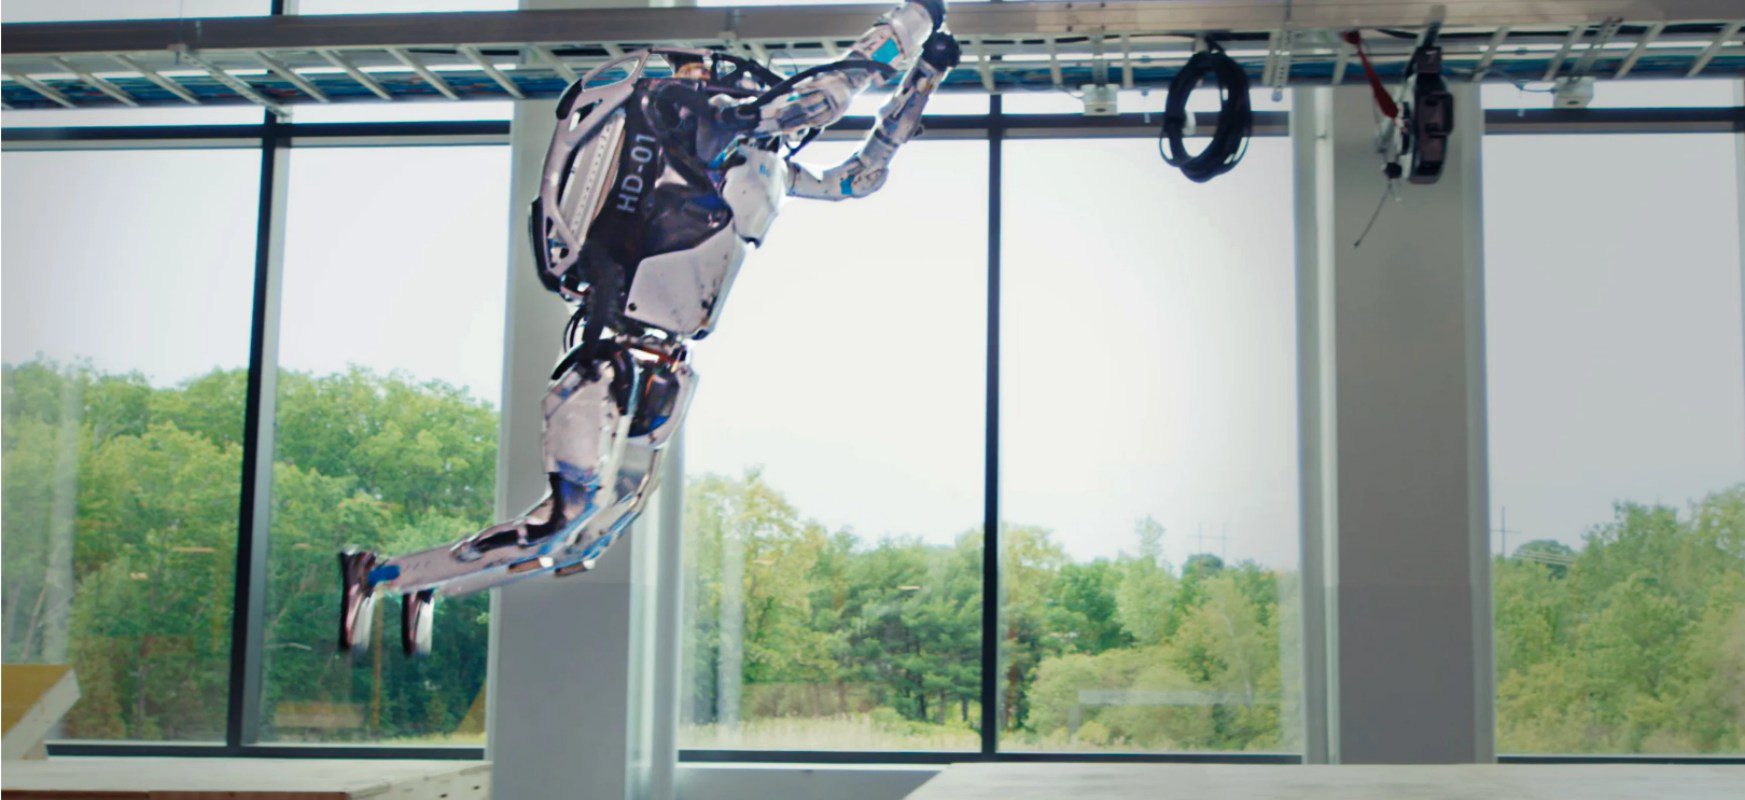 Video des Tages: Roboter von Boston Dynamics umrundet den Hindernisparcours und rollt rückwärts 6